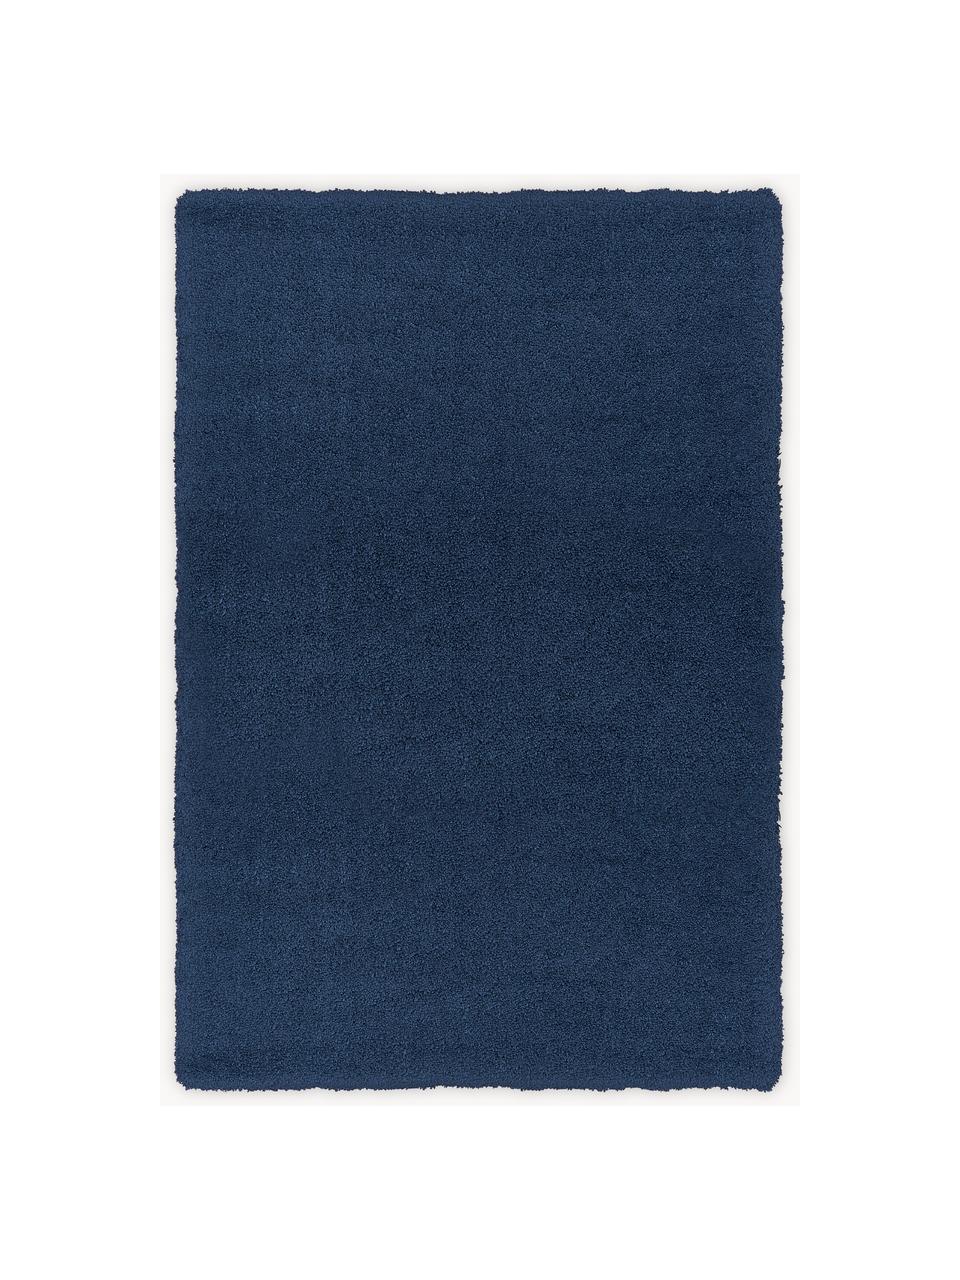 Tapis moelleux à poils longs Leighton, Bleu foncé, larg. 120 x long. 180 cm (taille S)